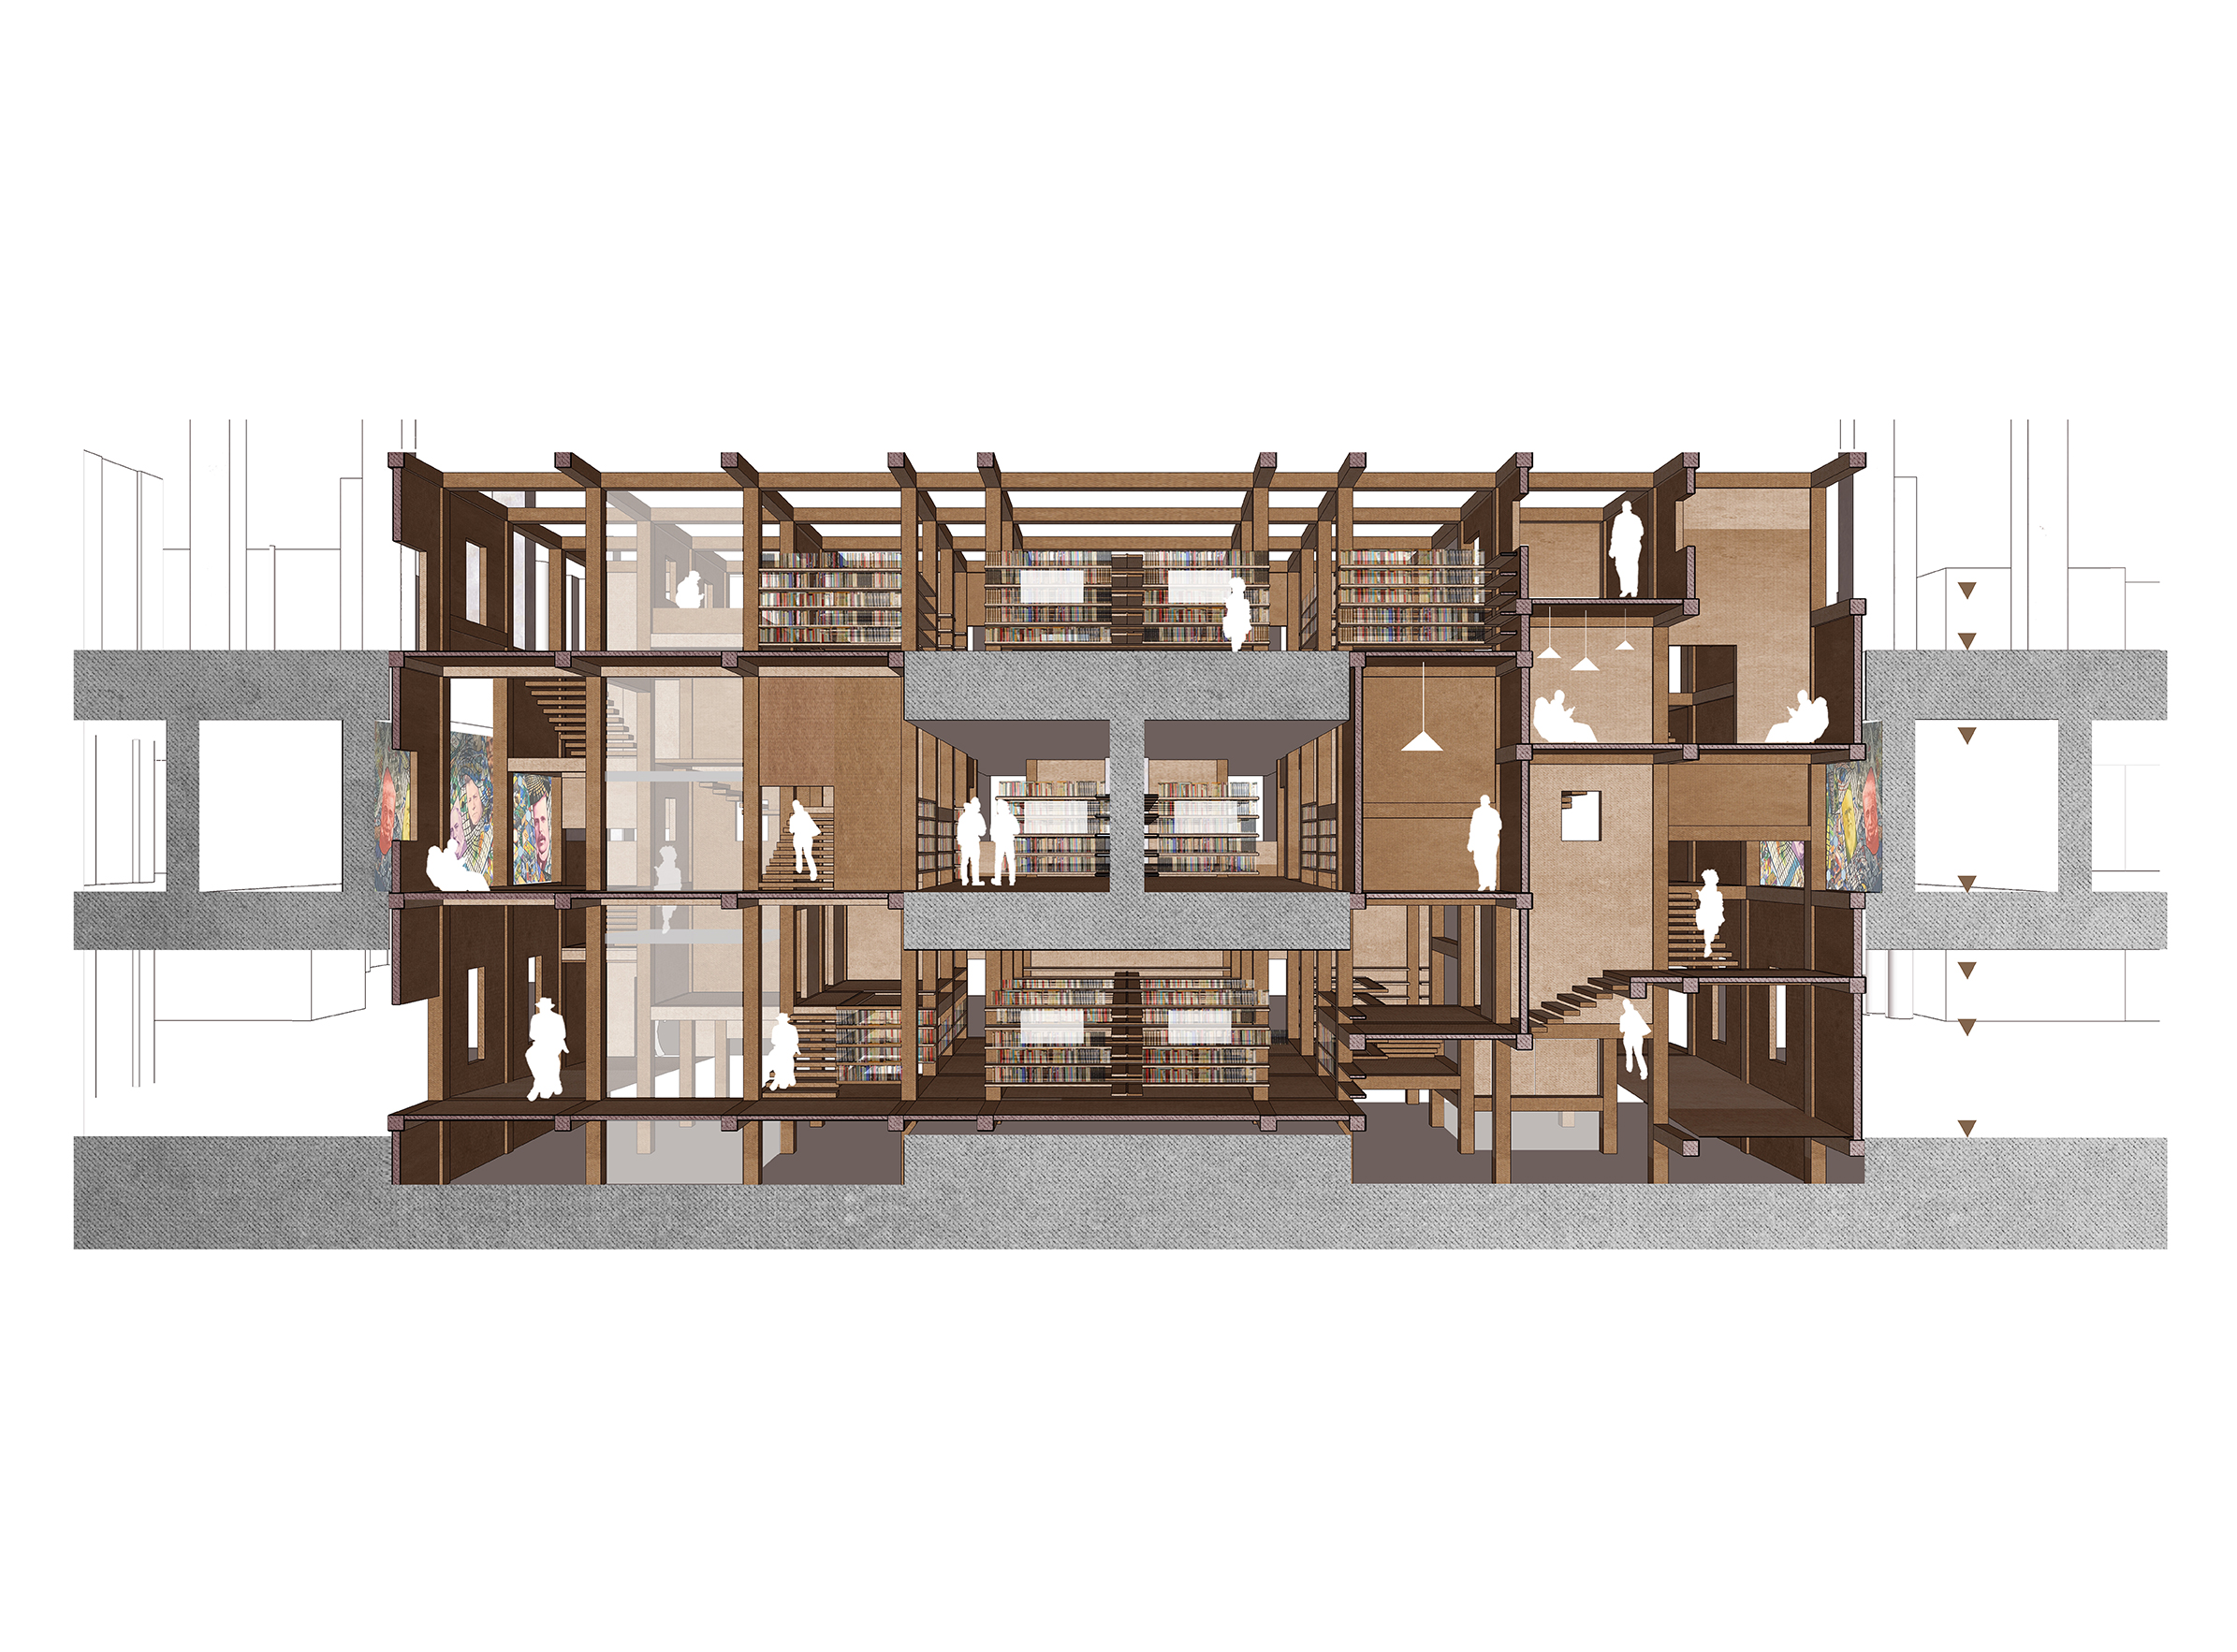 La Maison BSI 03 - Friches + Culturel - Caractère Spécial - Matthieu Poitevin Architecture